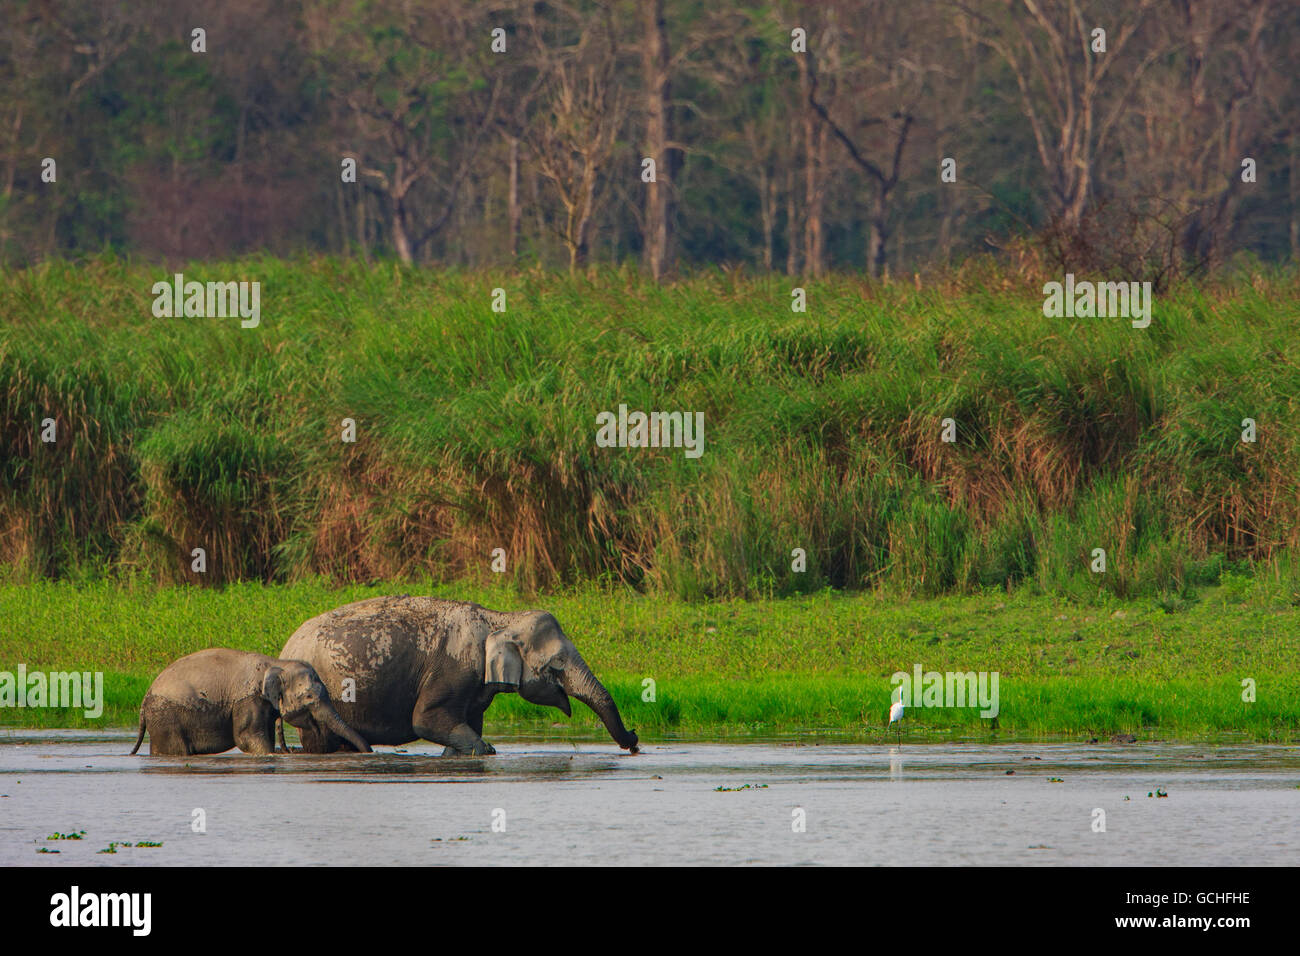 La madre e il Bambino elefante il raffreddamento in acqua : immagine scattata nel Parco Nazionale di Kaziranga India) Foto Stock